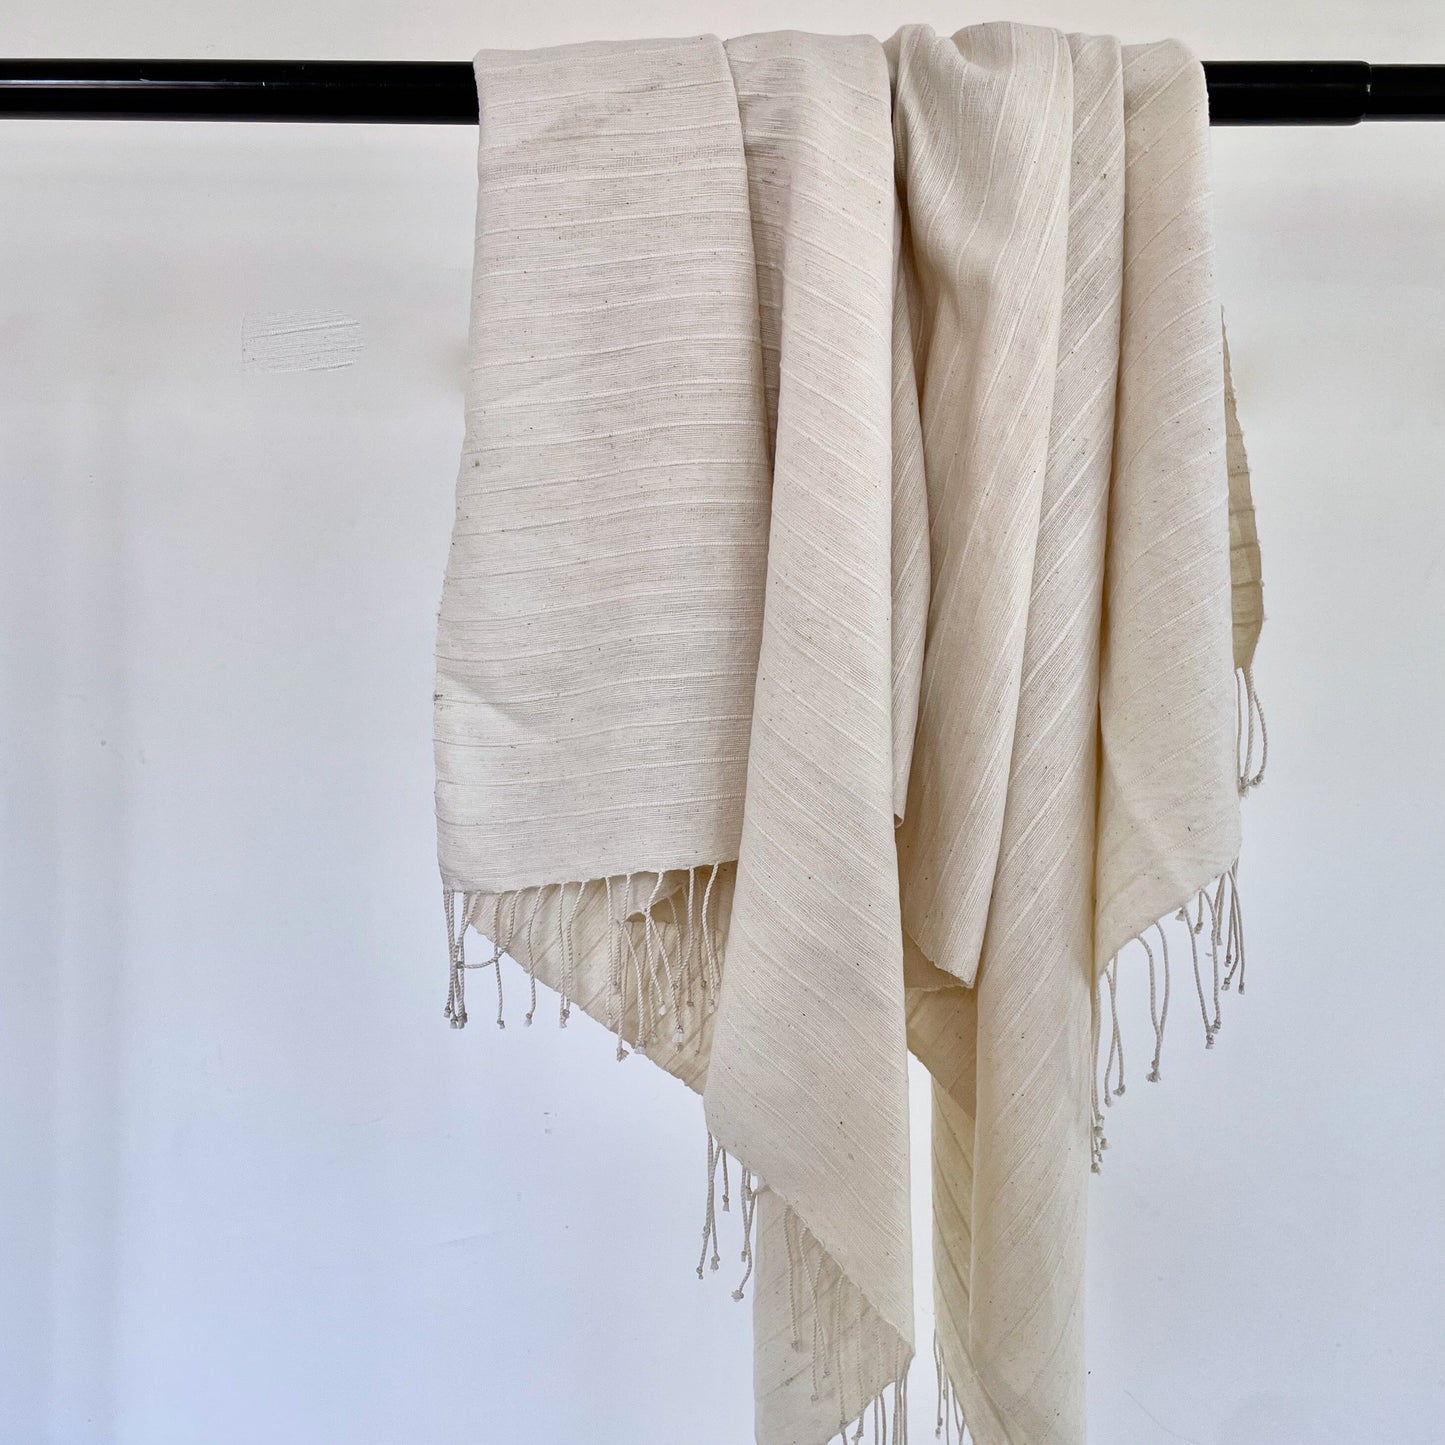 Jamma handwoven cotton beach/bath towel beach towel sabahar Ivory 